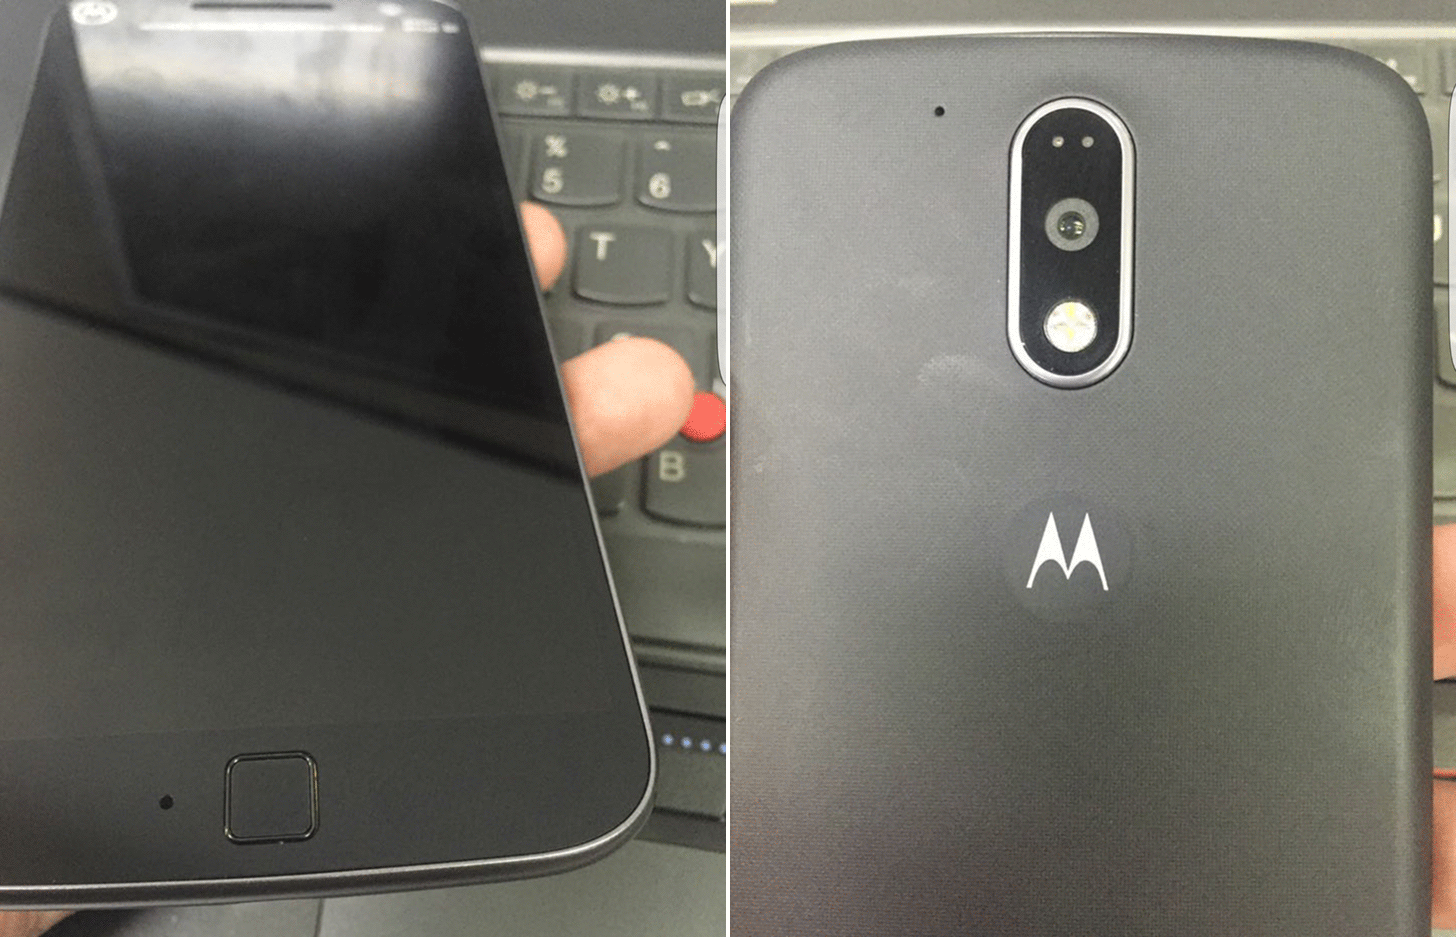 4g 2016. Моторола с отпечатком пальца. Сканер Motorola. Moto g5s крышка на камеру. Motorola Moto g30 сканер отпечатков пальцев.